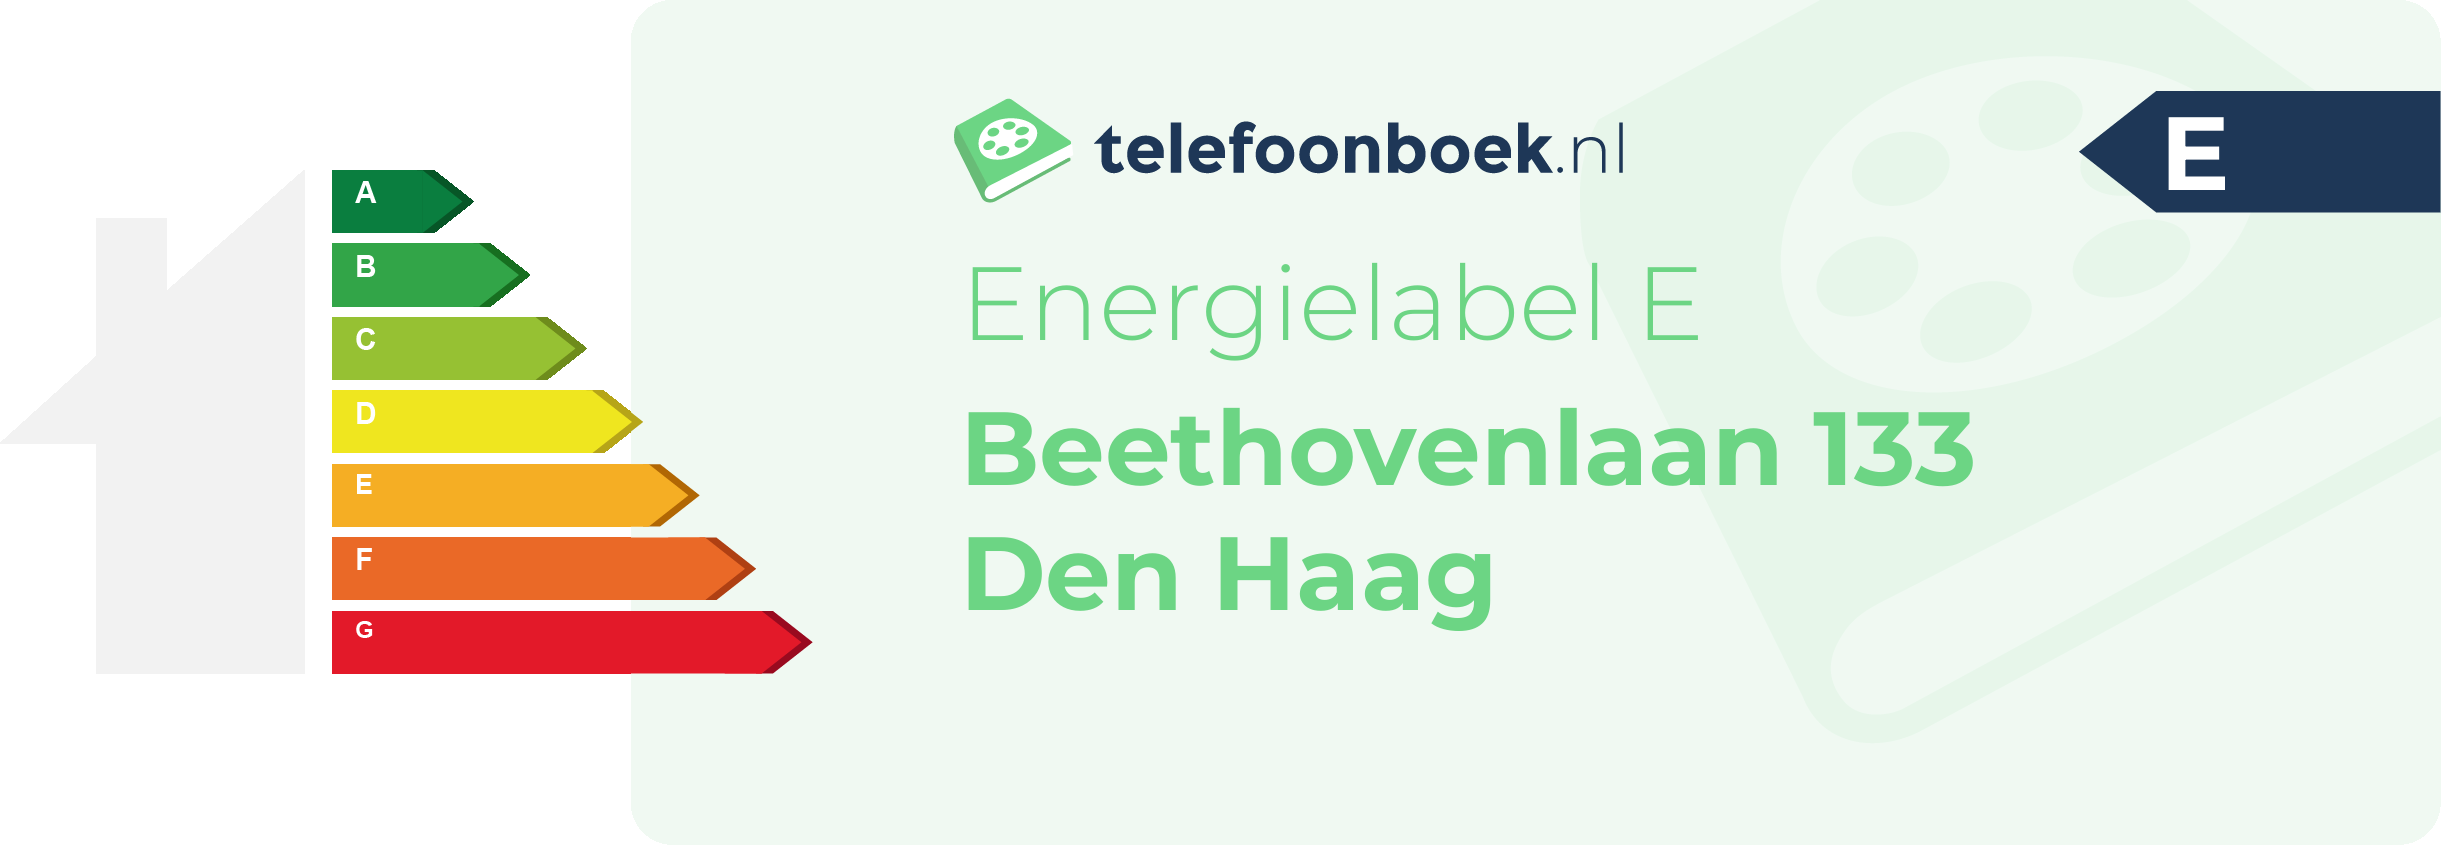 Energielabel Beethovenlaan 133 Den Haag